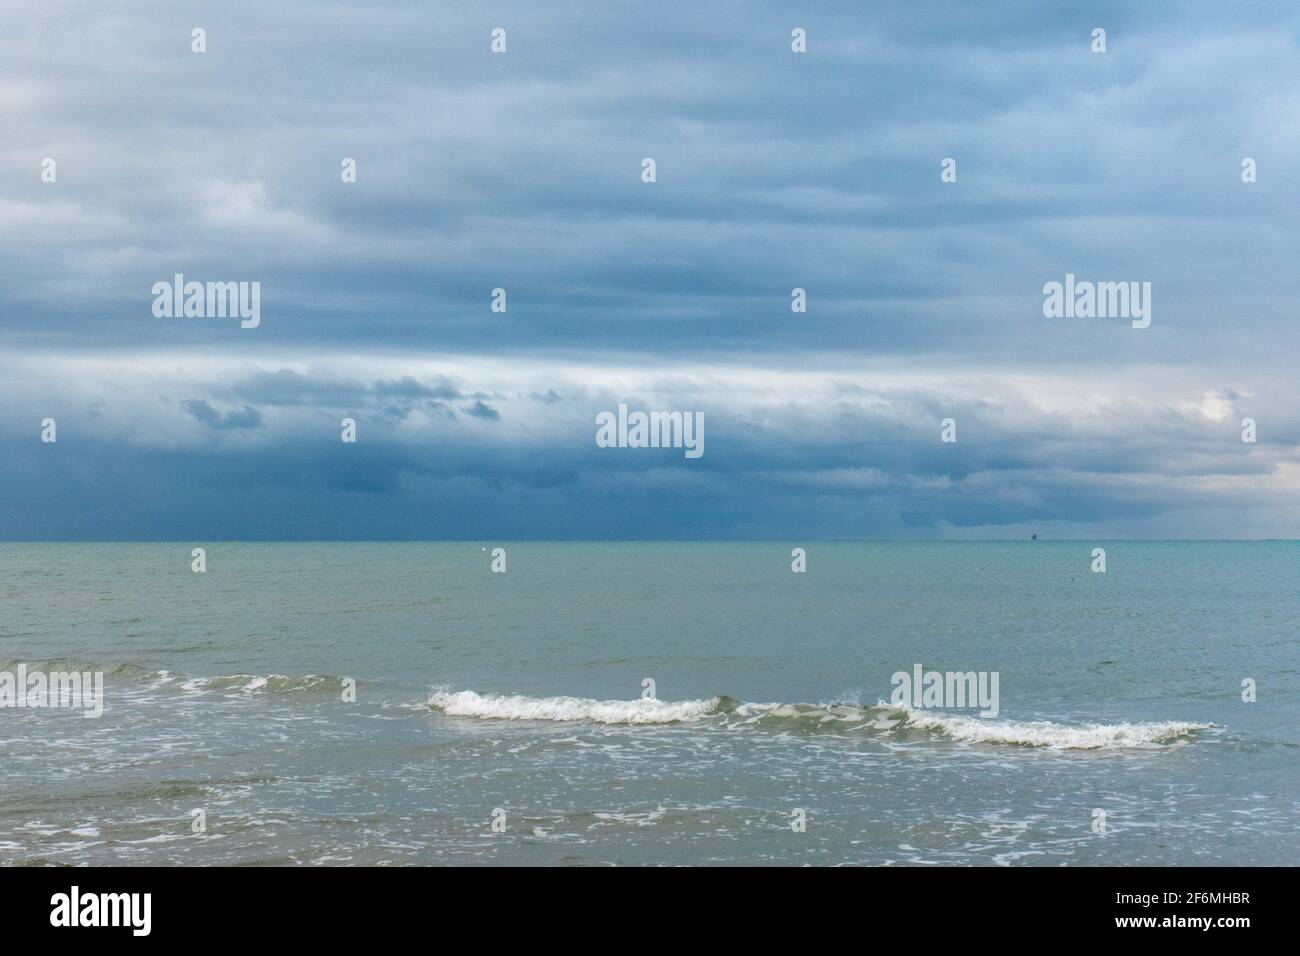 Agua de mar con olas y cielo nublado durante un mal día meteorológico Foto de stock